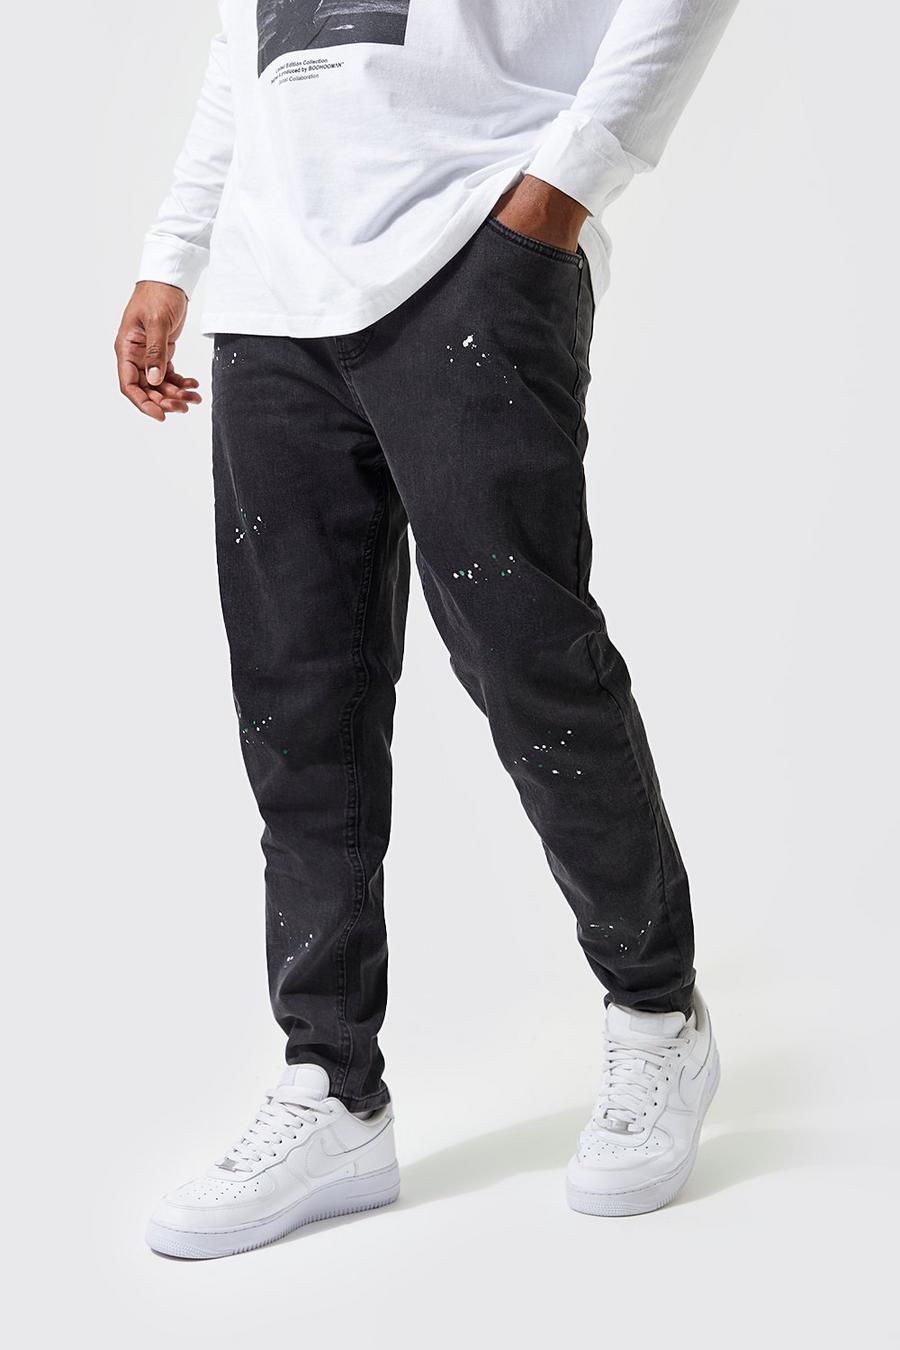 אפור ביניים grigio סופר סקיני ג'ינס עם כתמי צבע למידות גדולות